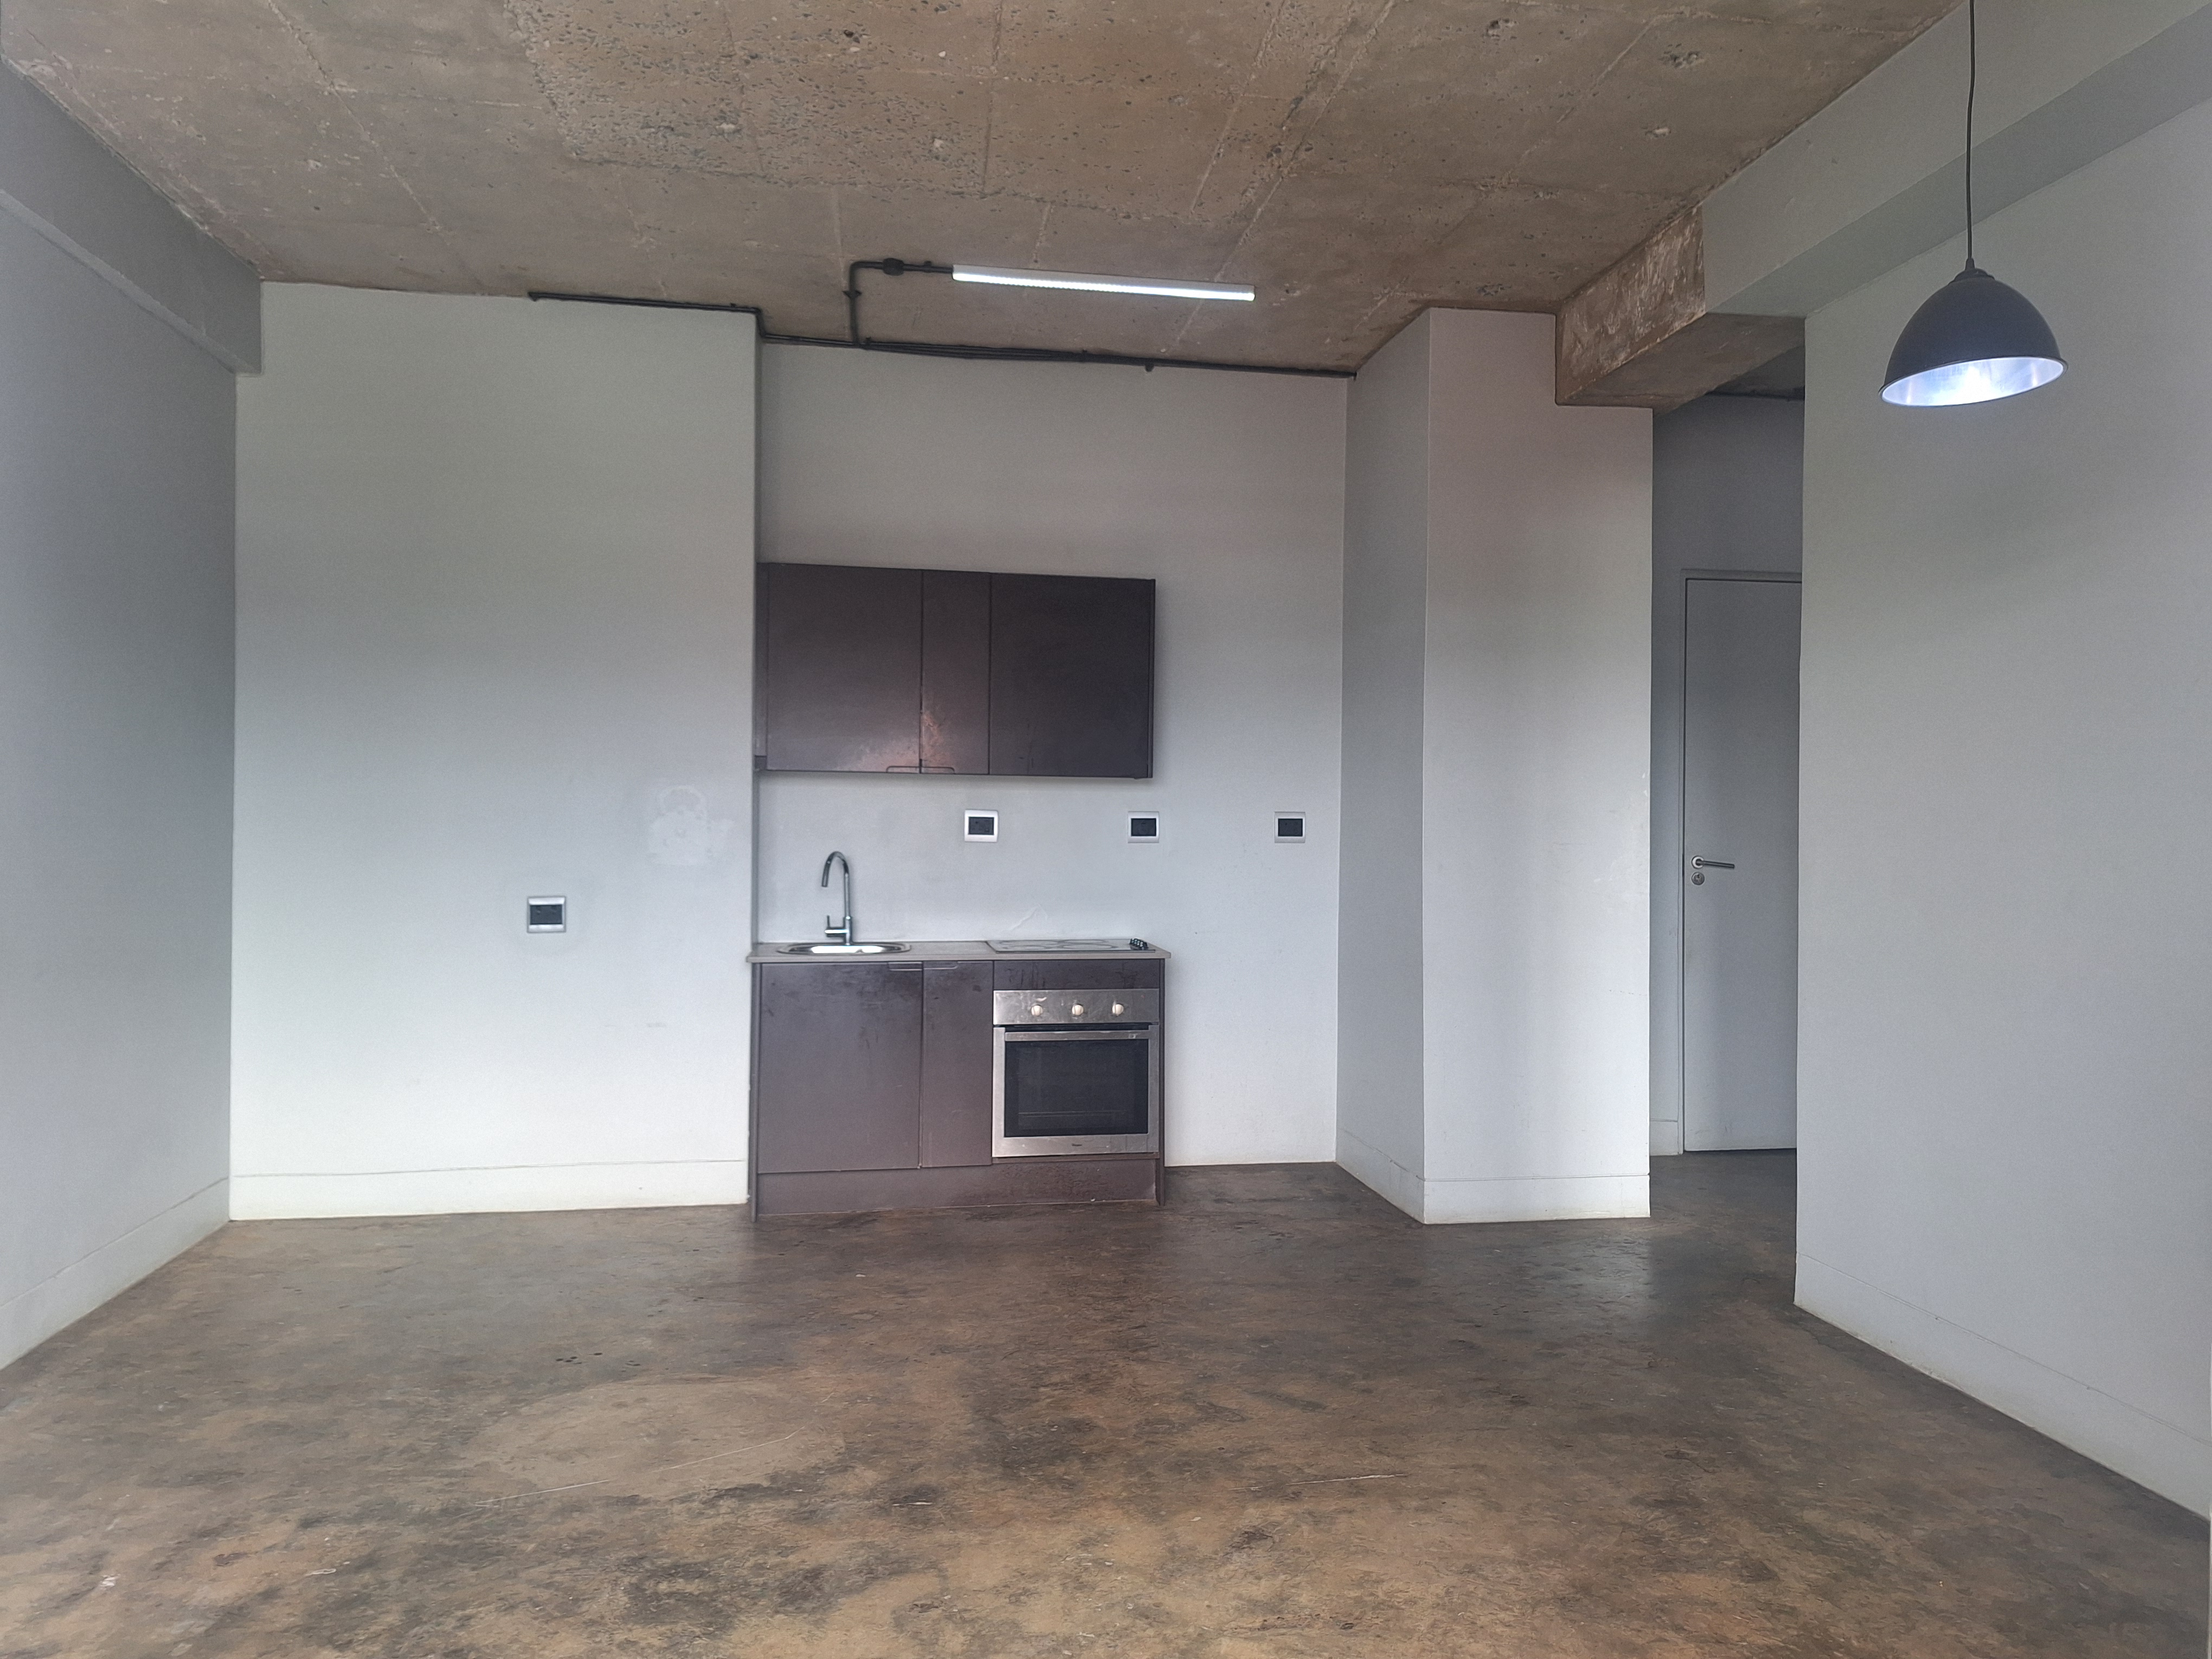 To Let 1 Bedroom Property for Rent in New Doornfontein Gauteng